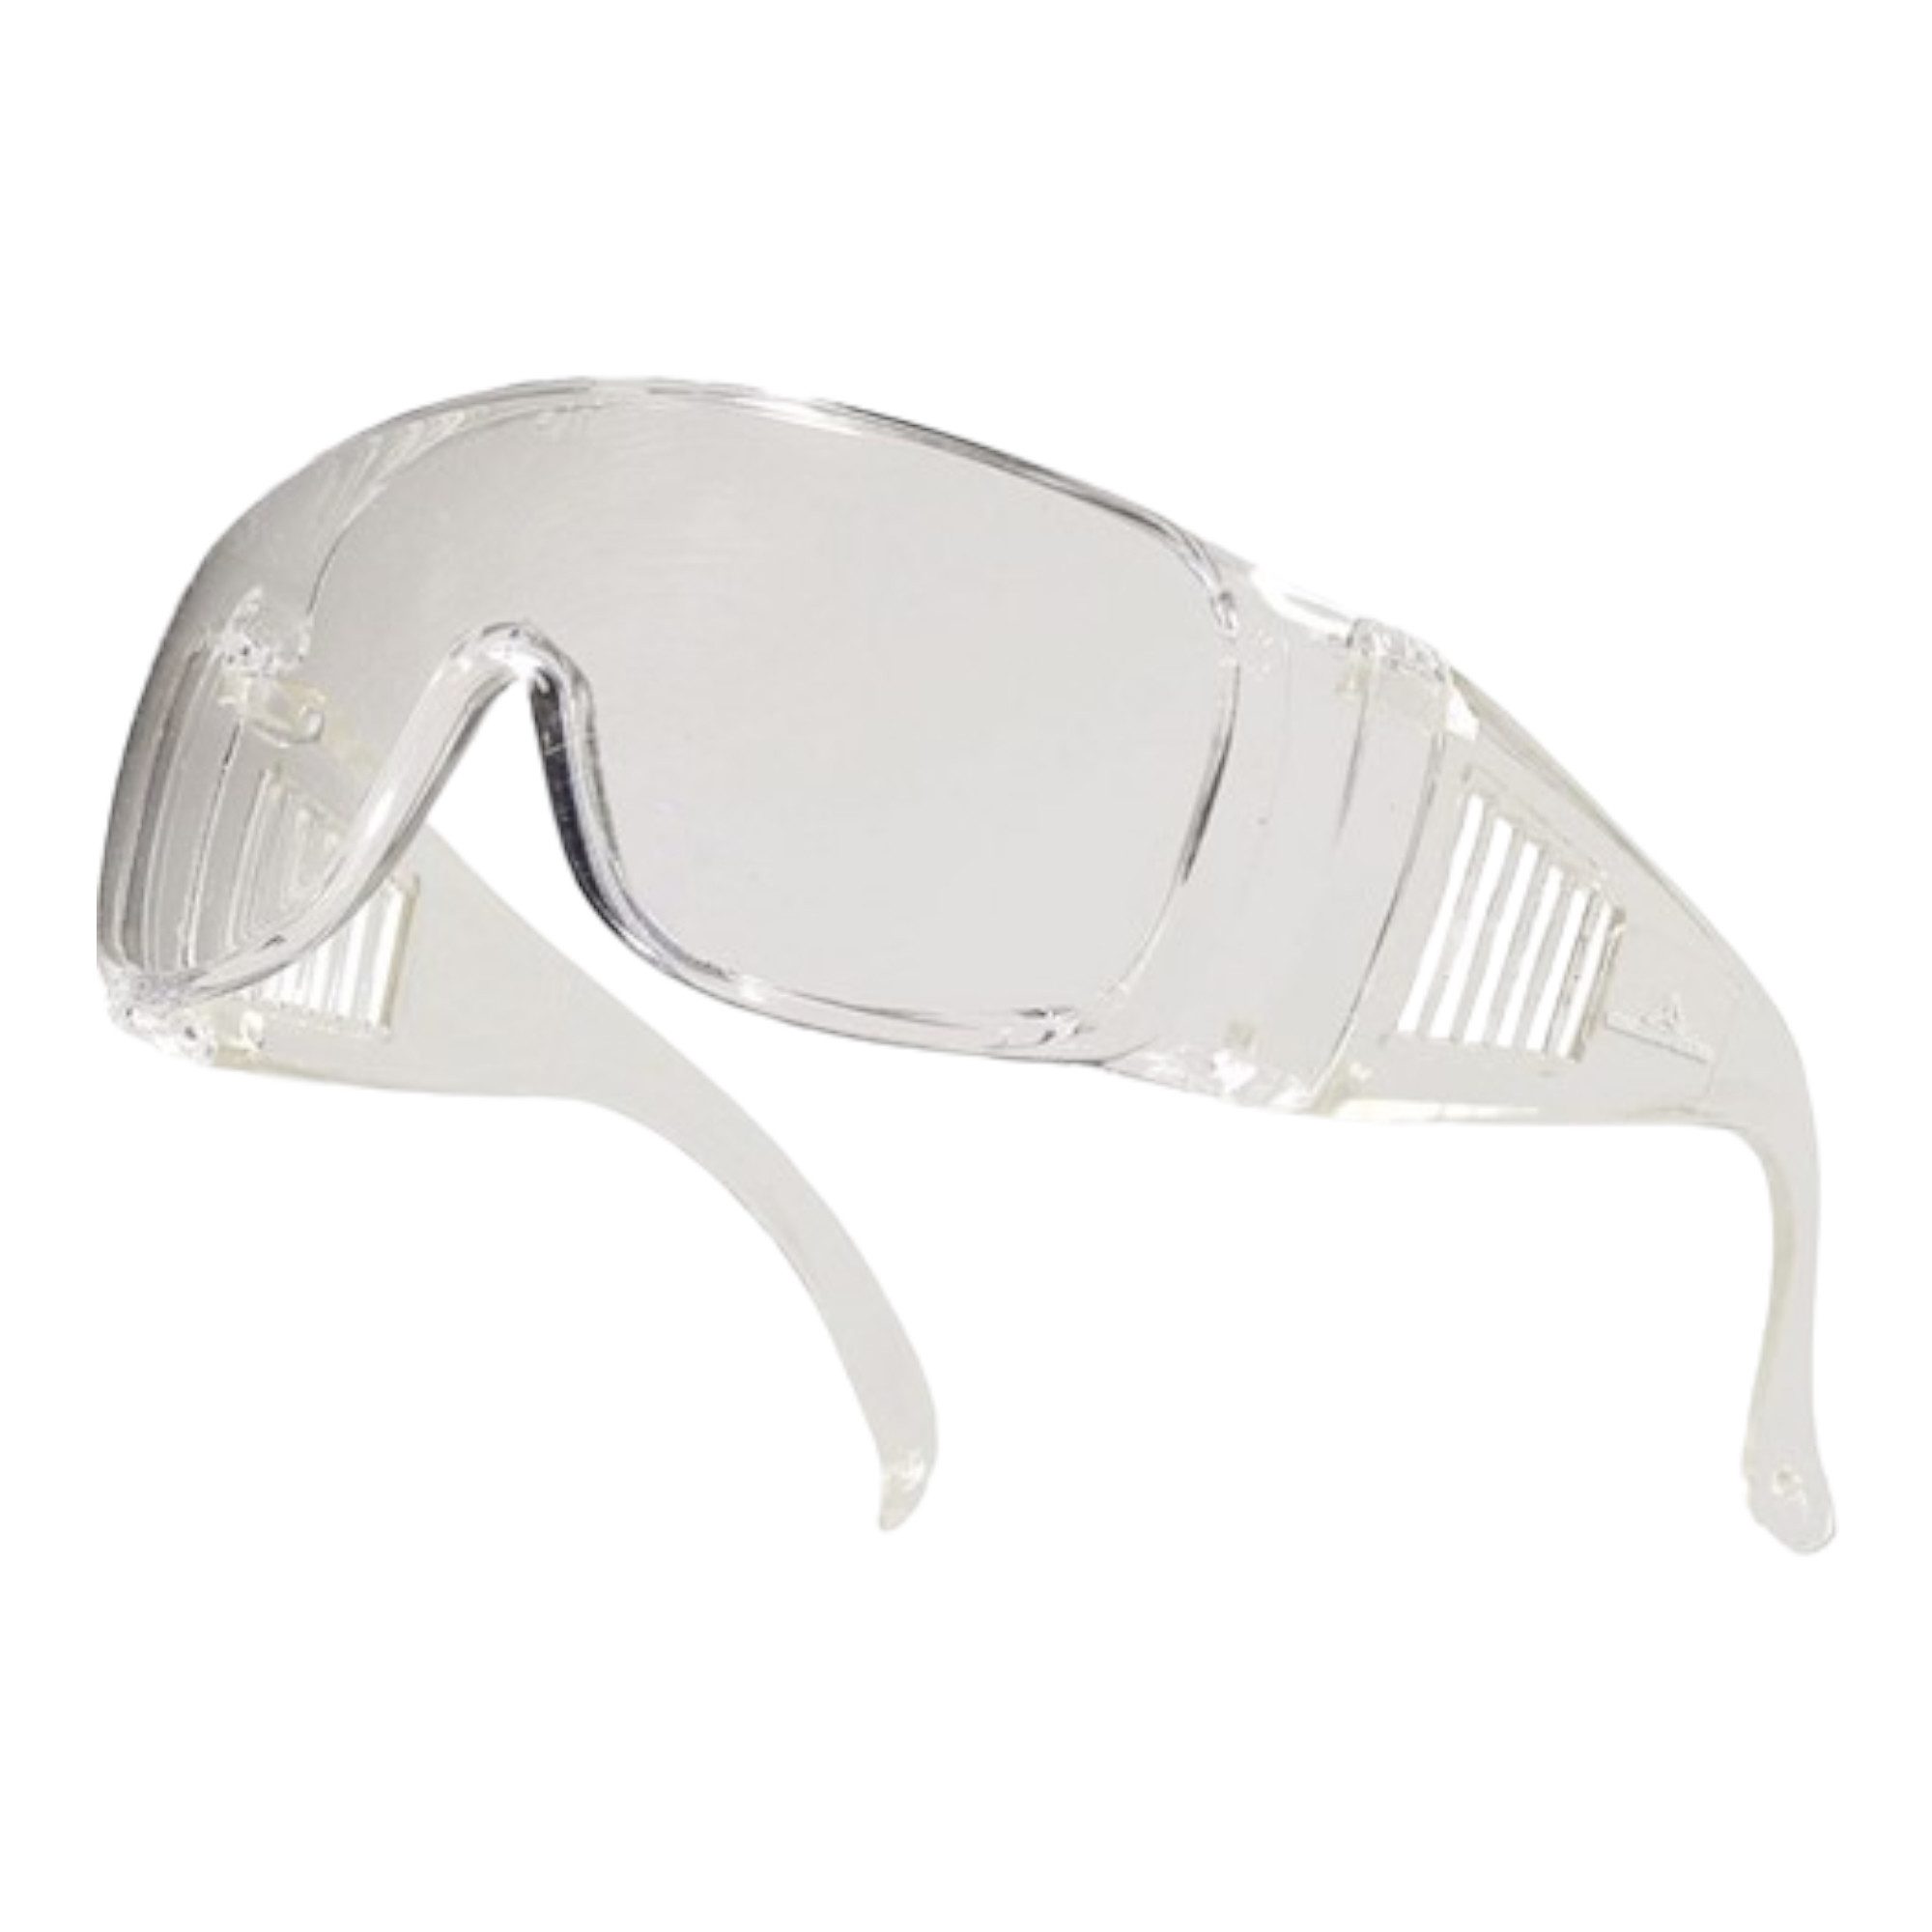 Arbeitsschutzbrille Arbeitsschutzbrille B2 Antikratzbeschichtung Polycarbonat, klare Gl&au